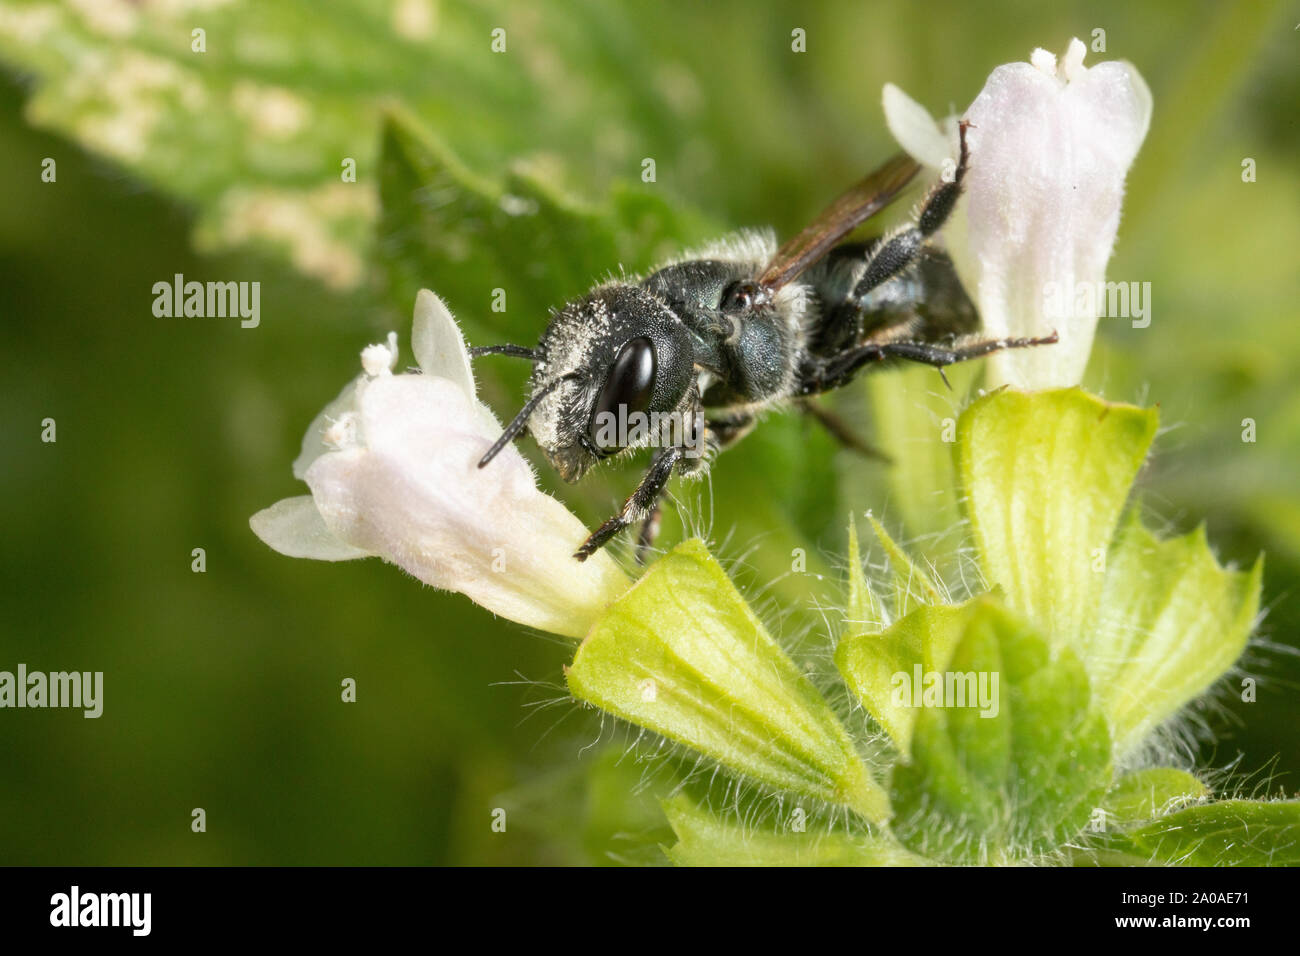 Femelle Bleue abeille maçonne avec du pollen sur la tête, montrant comment des abeilles solitaires sont sous-apprécié, les insectes d'importance économique. Banque D'Images